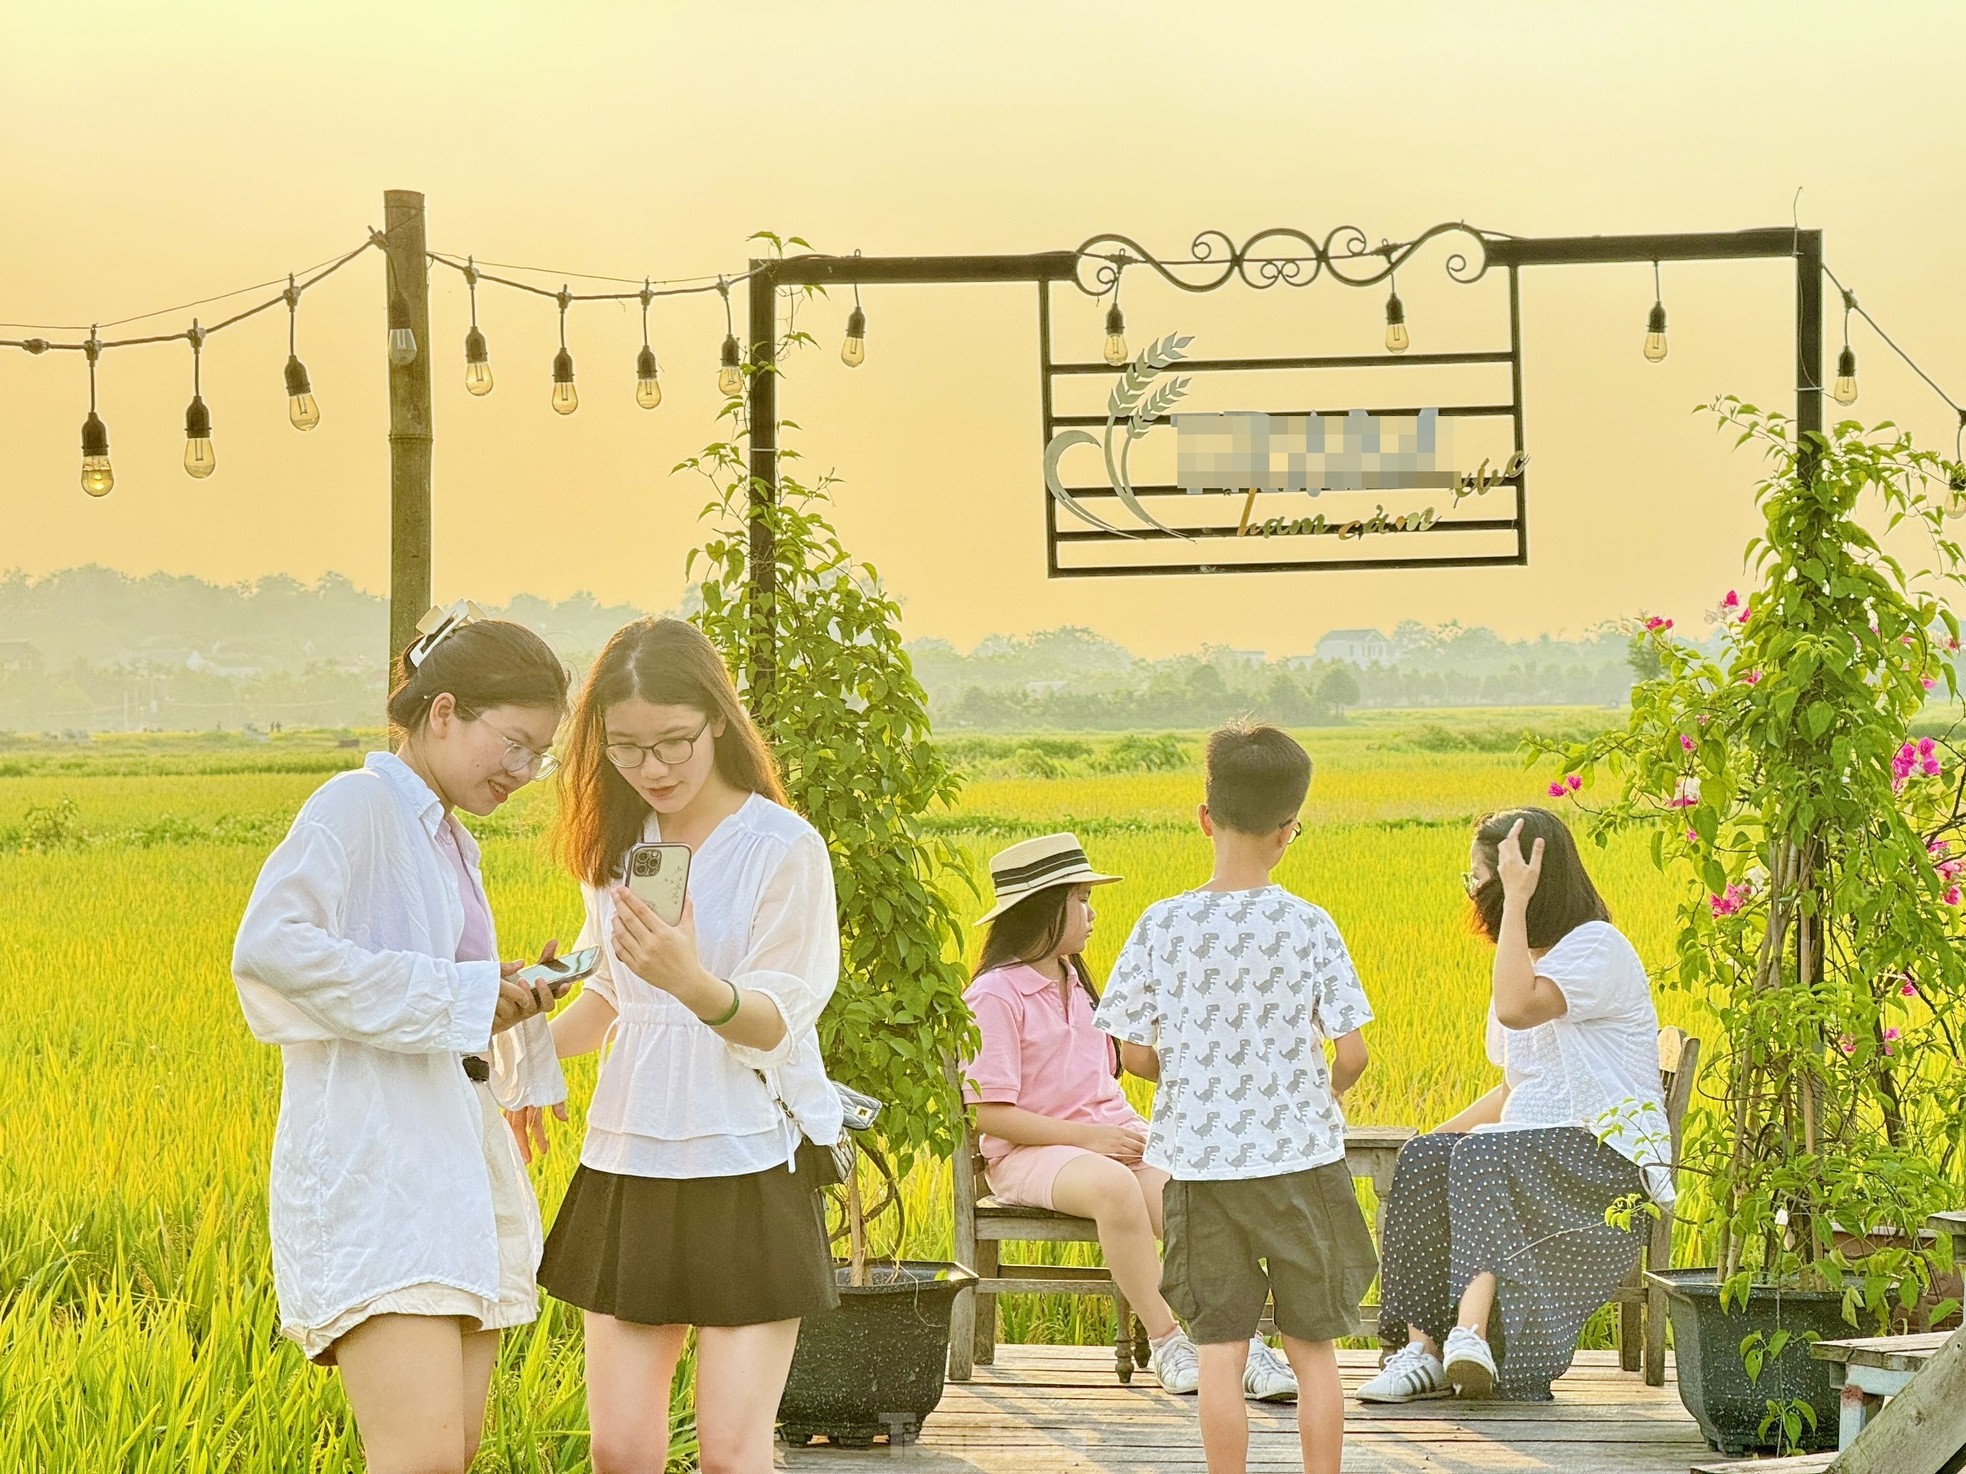 Quán cà phê giữa cánh đồng lúa chín vàng ở ngoại ô Hà Nội thu hút giới trẻ ảnh 13